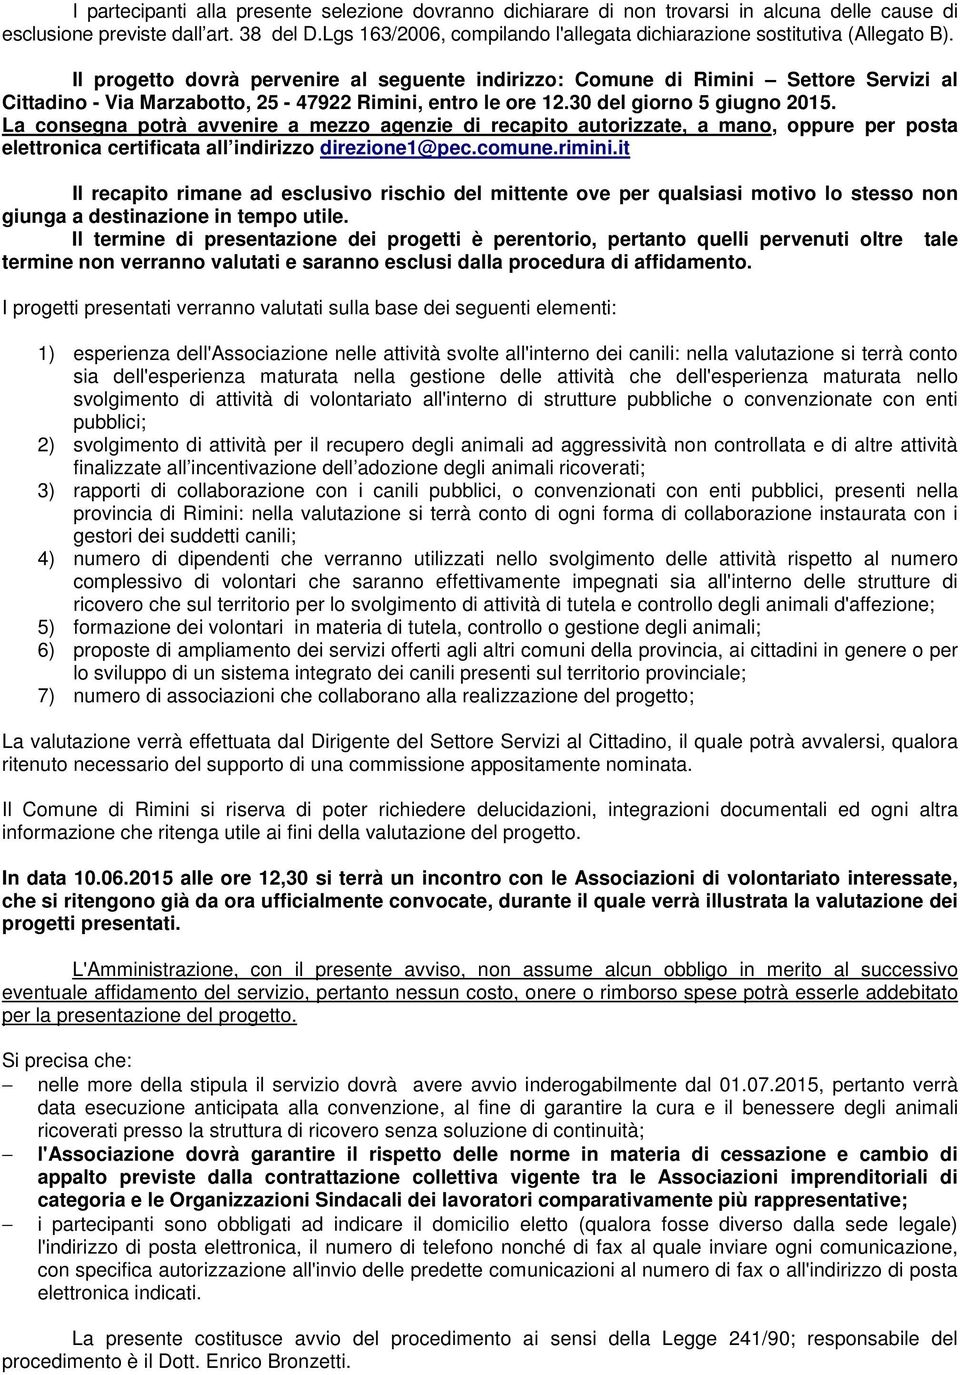 Il progetto dovrà pervenire al seguente indirizzo: Comune di Rimini Settore Servizi al Cittadino - Via Marzabotto, 25-47922 Rimini, entro le ore 12.30 del giorno 5 giugno 2015.